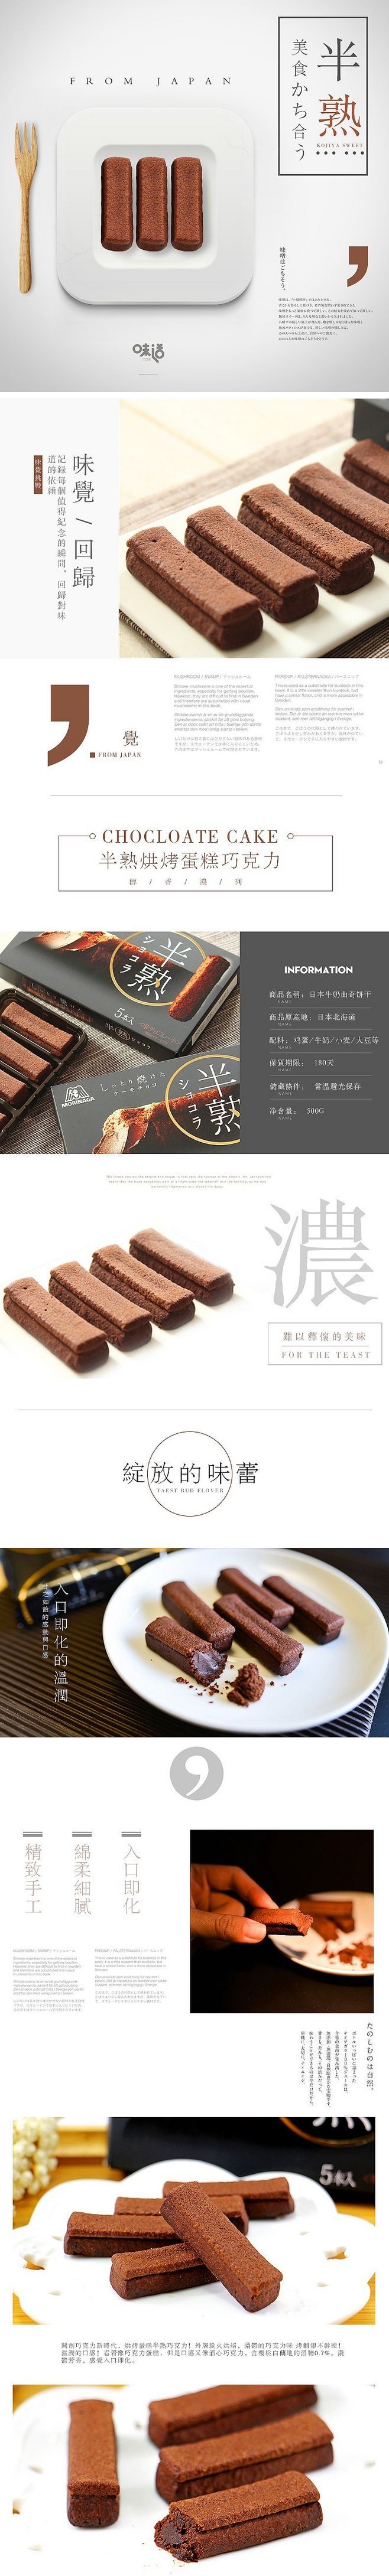 淘宝美工江一帆巧克力蛋糕详情页作品